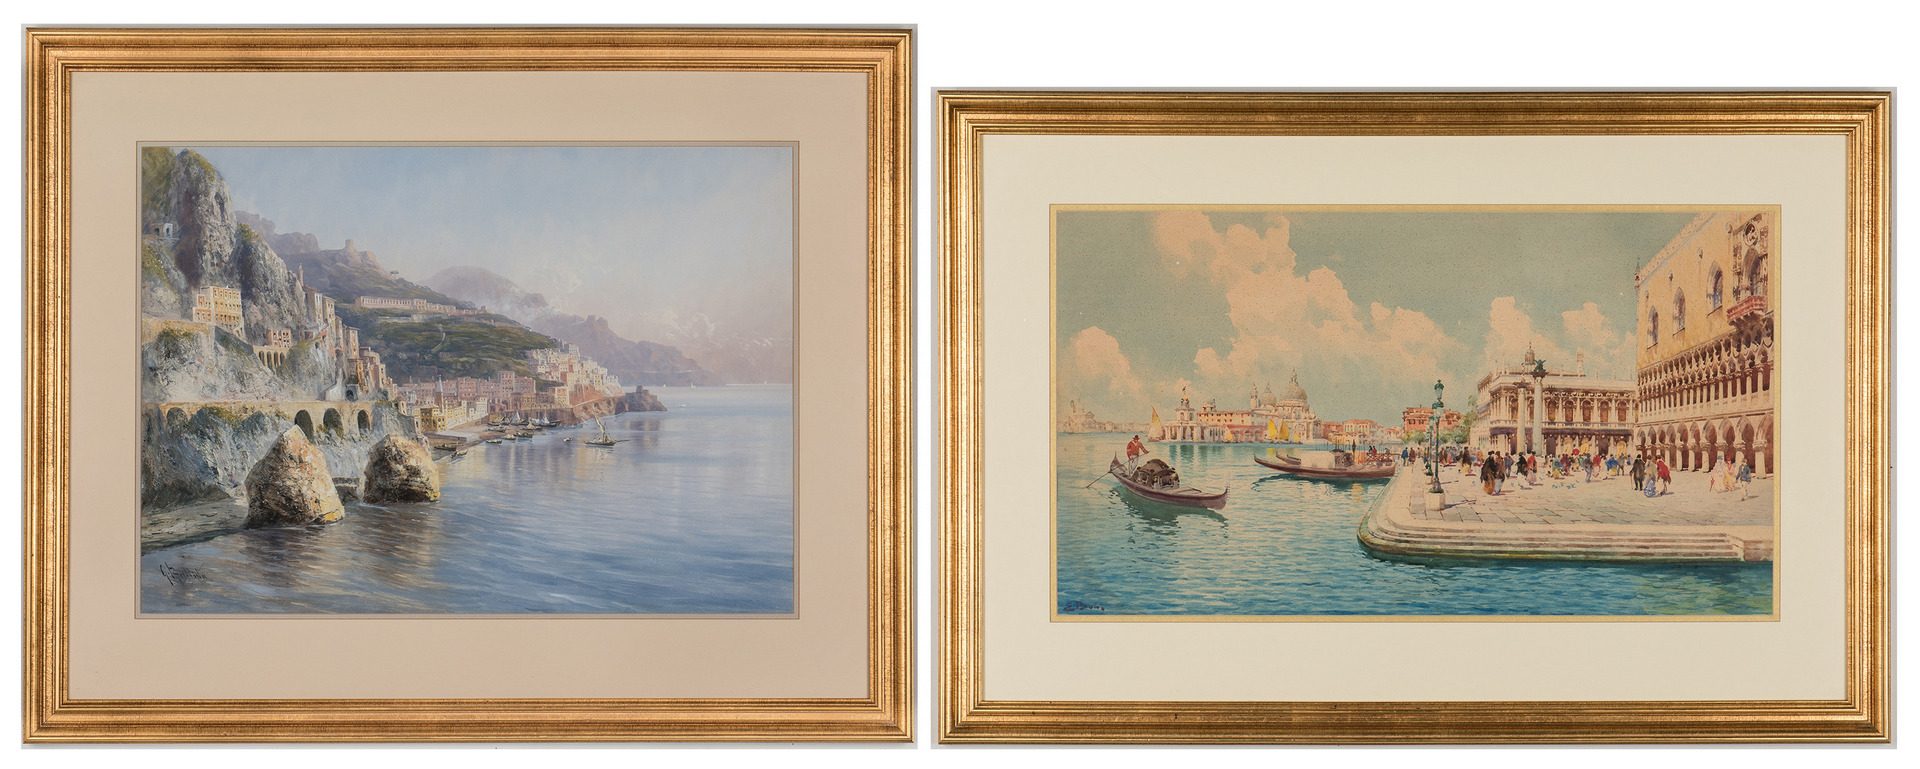 Lot 63: 2 Italian Seascape Watercolor Paintings